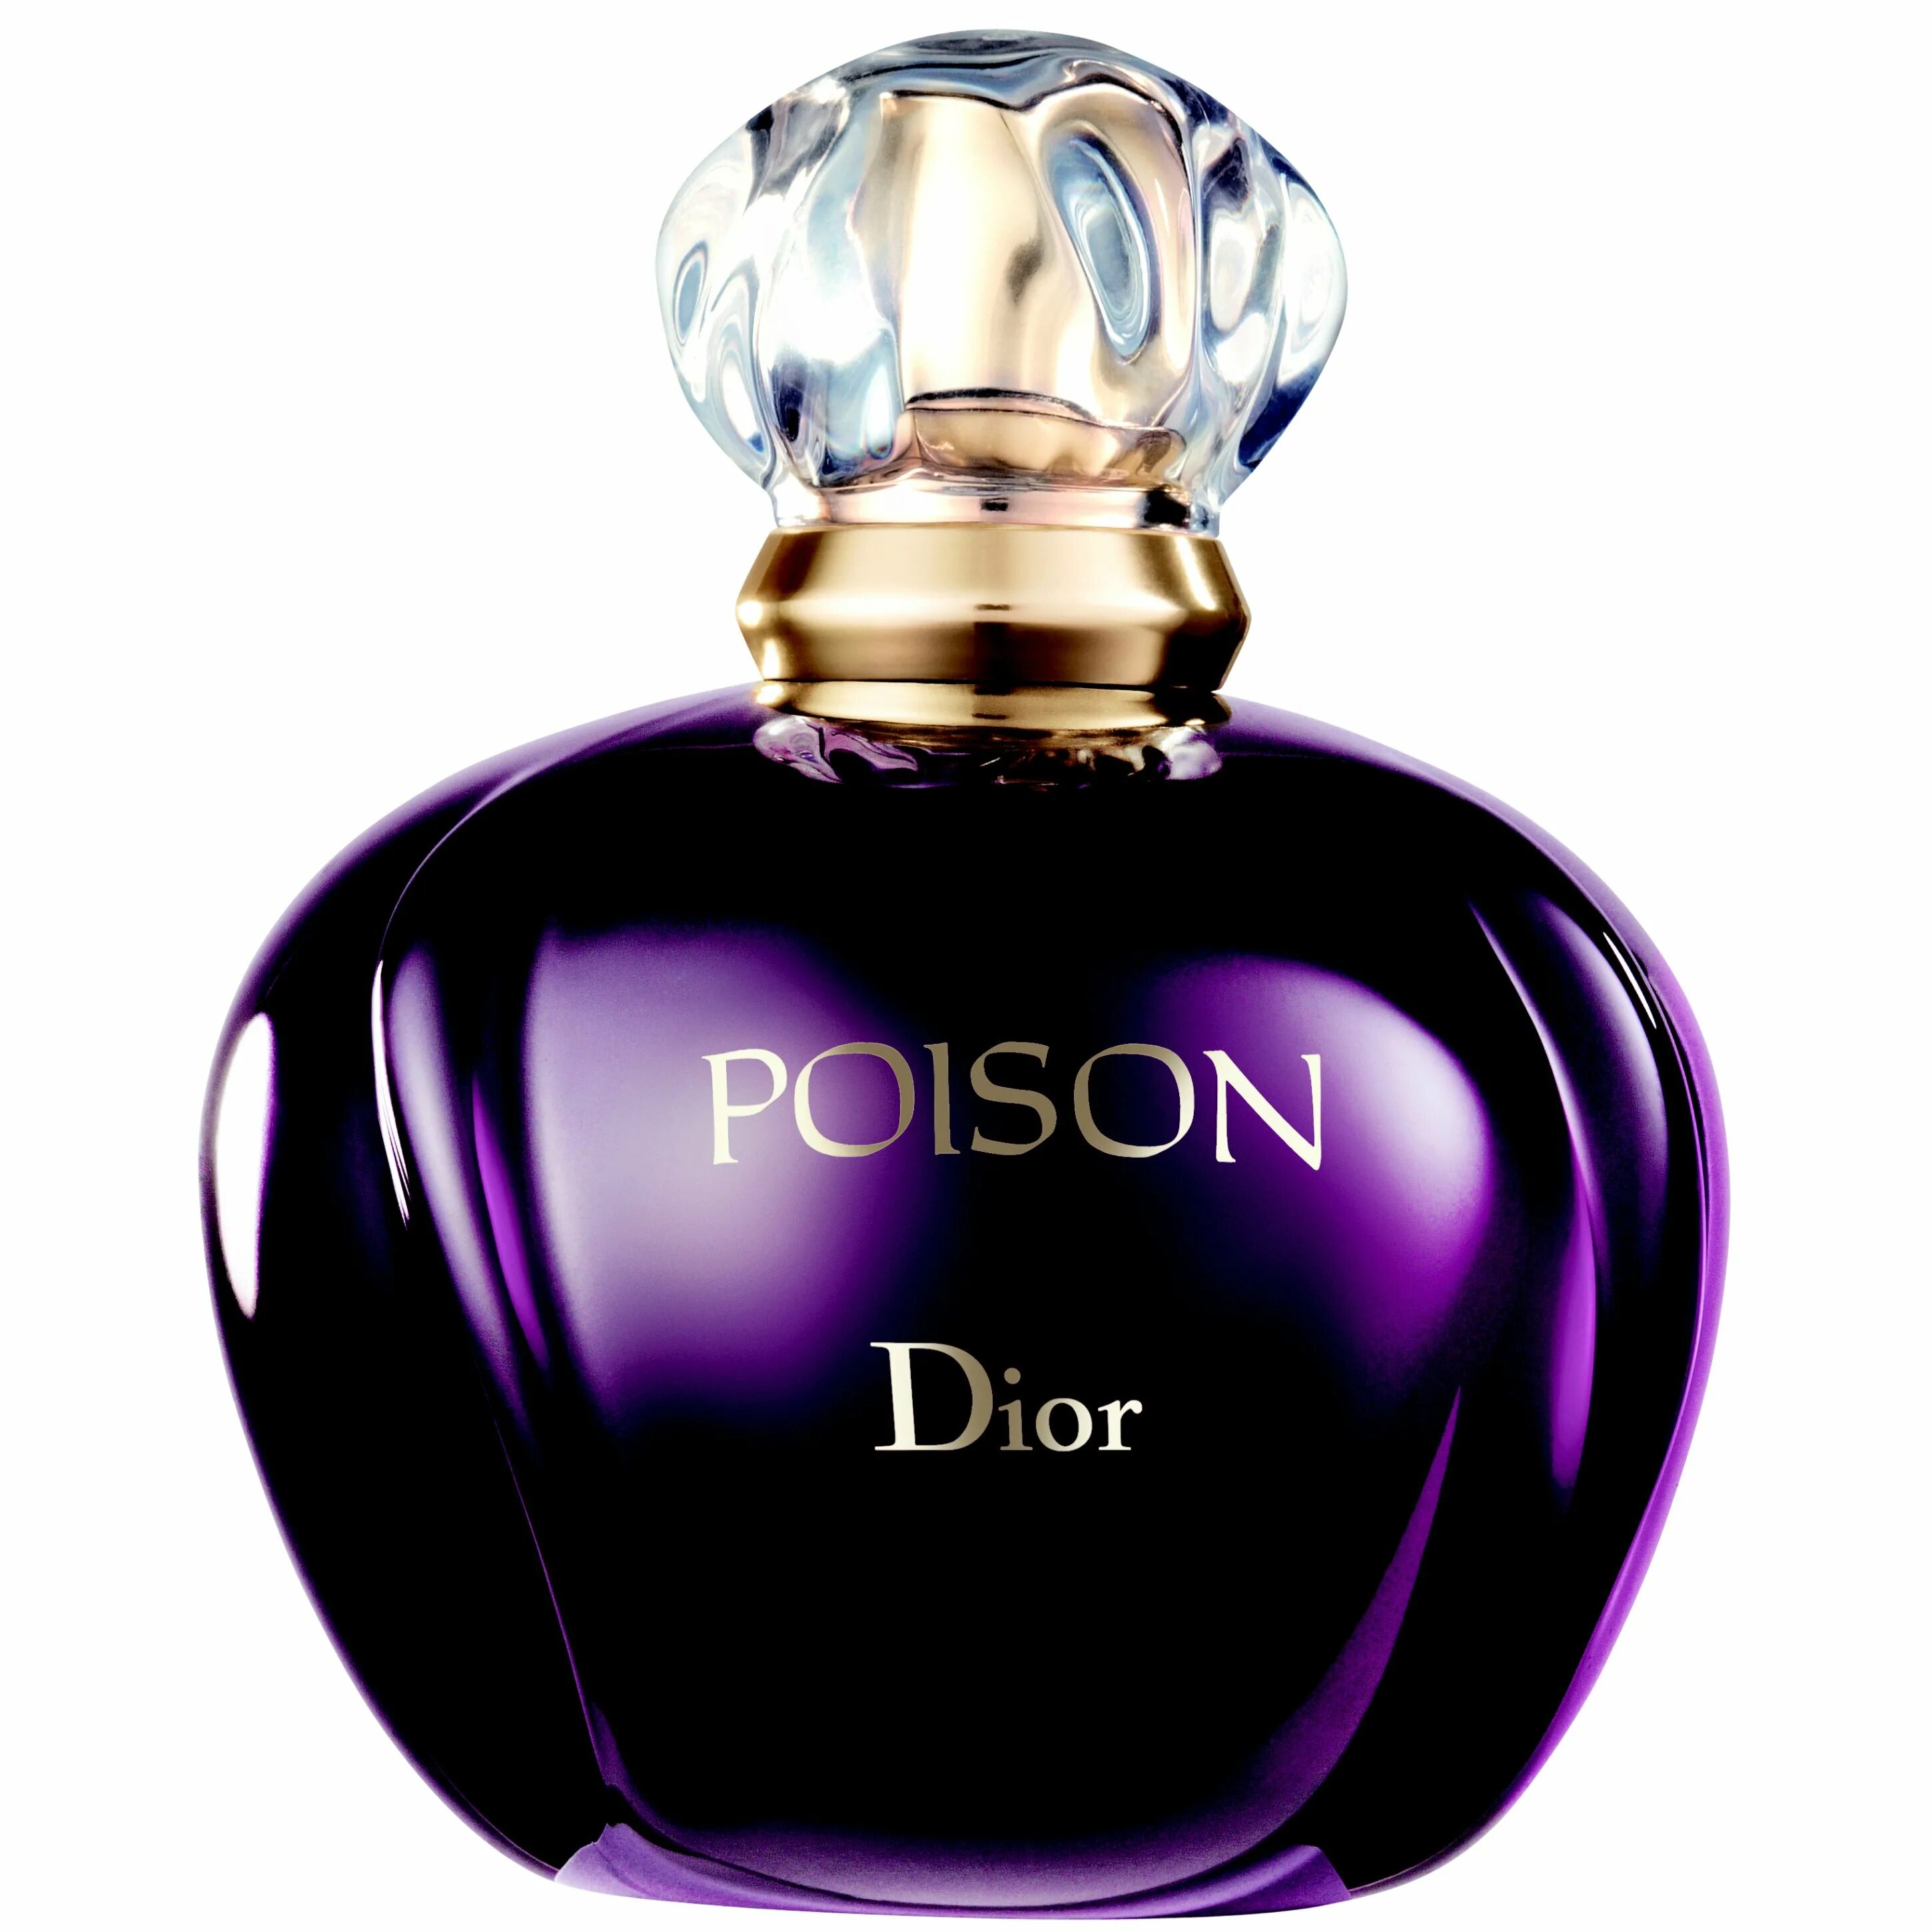 Духи Christian Dior Poison. Духи диор женские роисон. Dior Poison EDT 100ml. Кристиан диор духи женские пуазон.